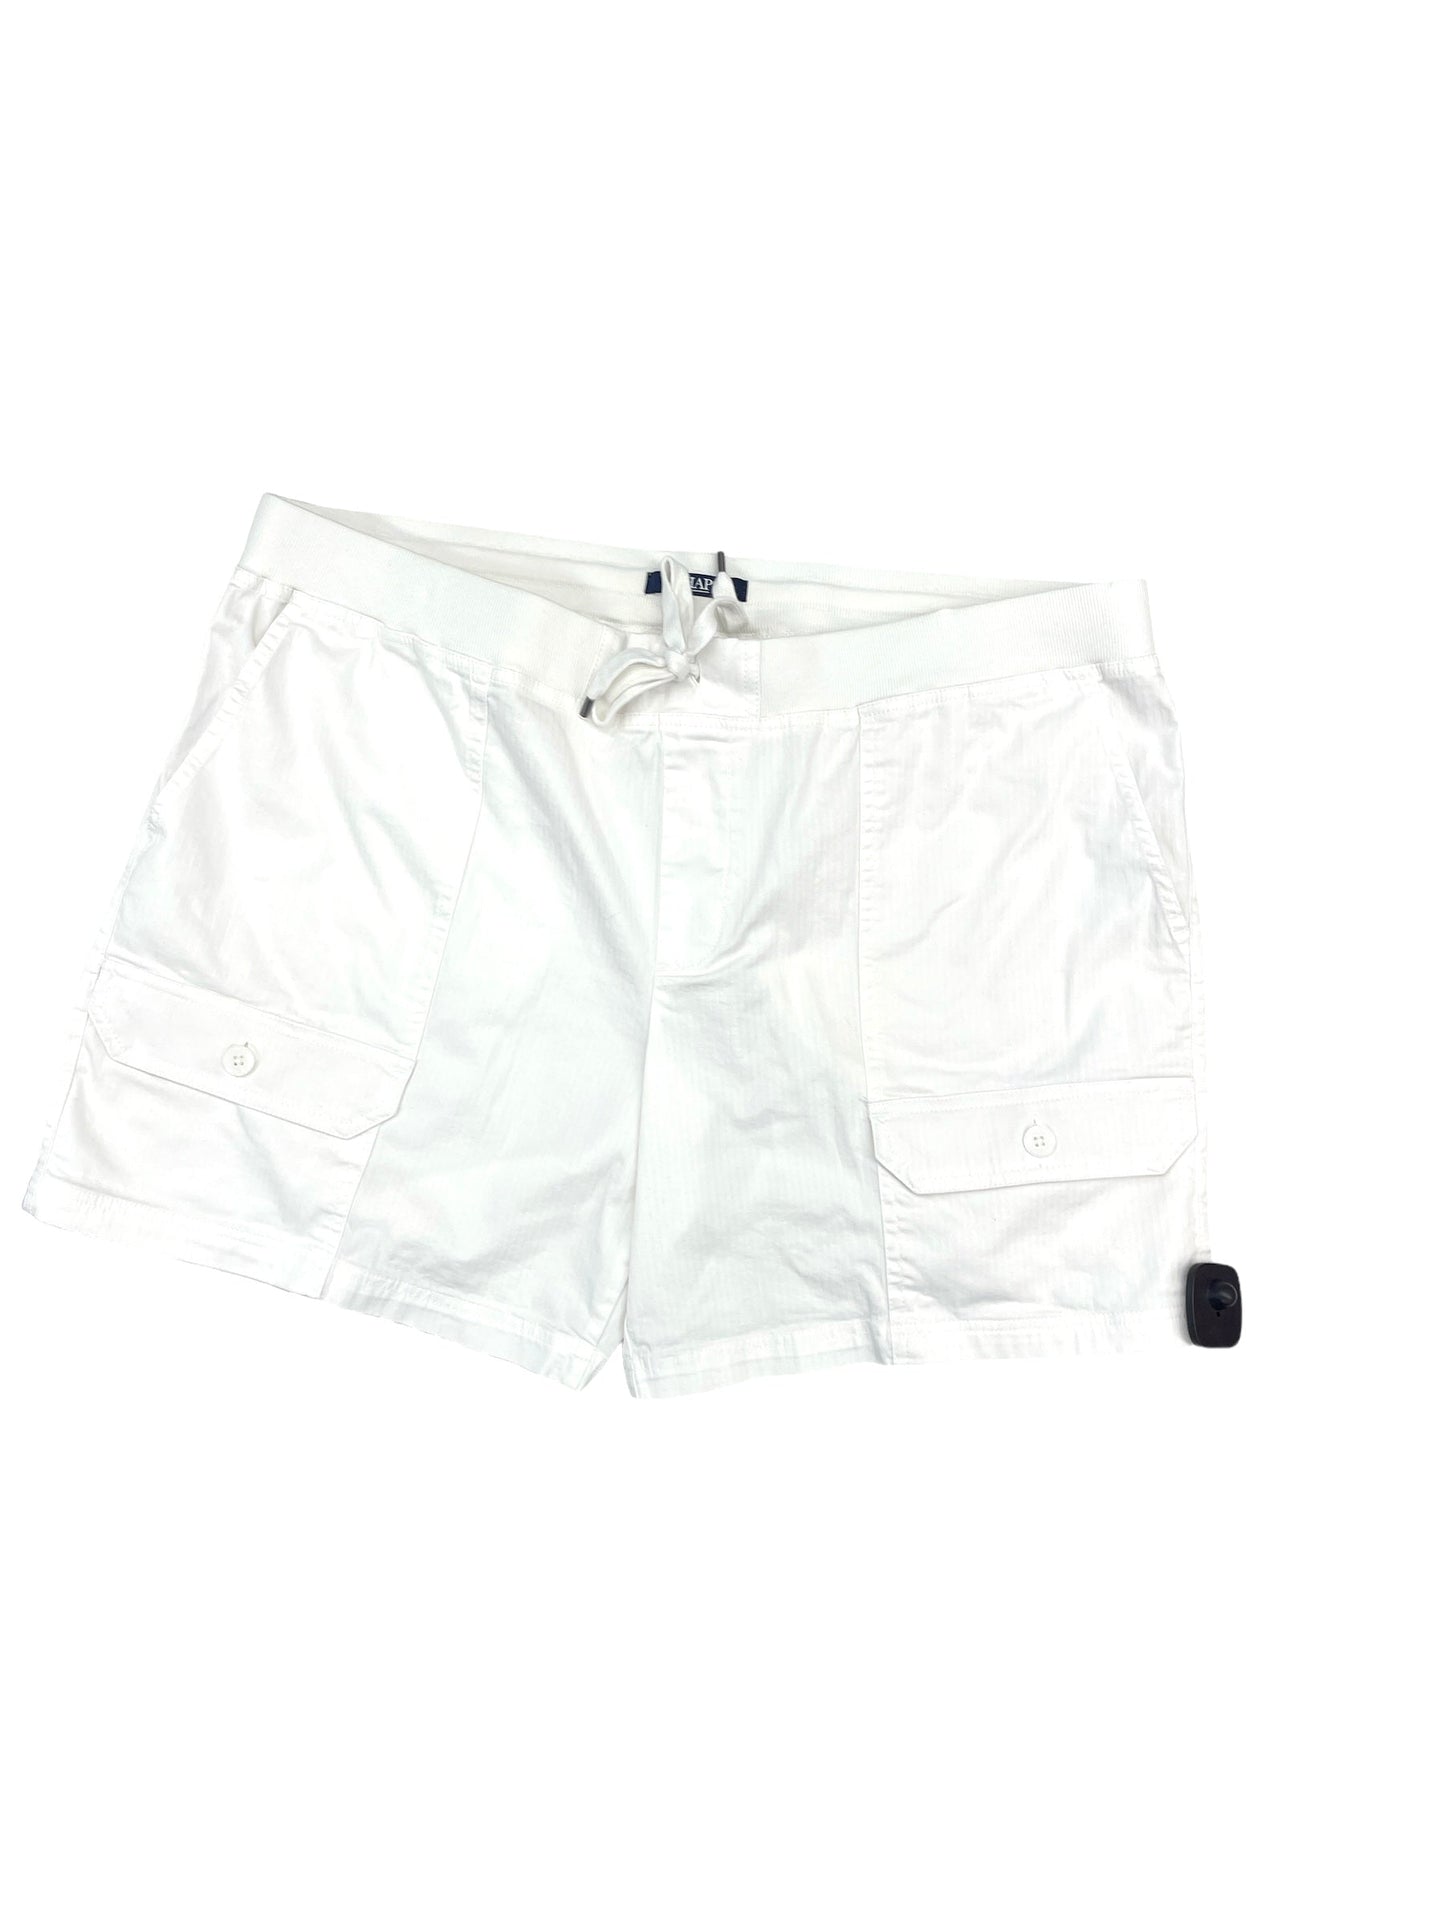 White Shorts Chaps, Size 1x